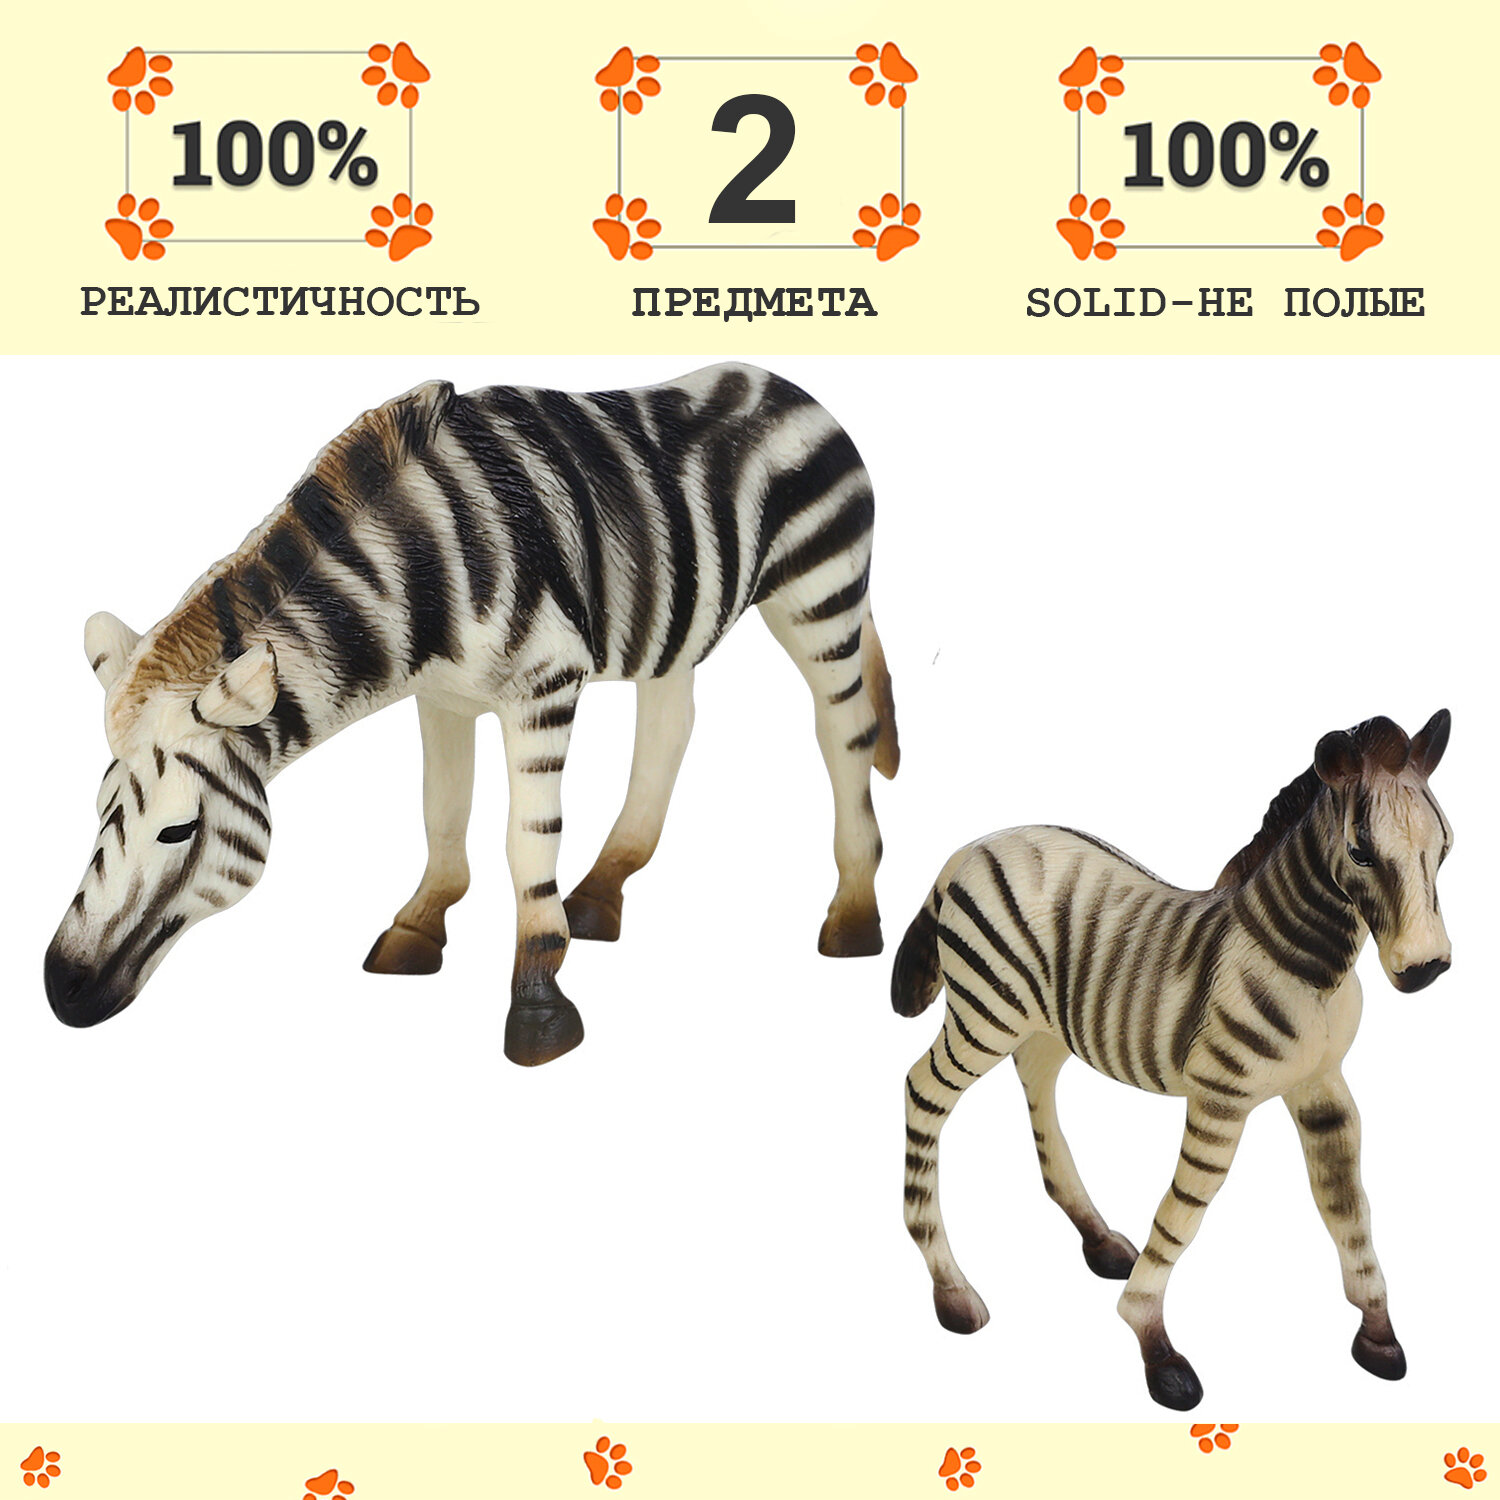 Набор фигурок животных серии "Мир диких животных": Семья зебр, 2 предмета